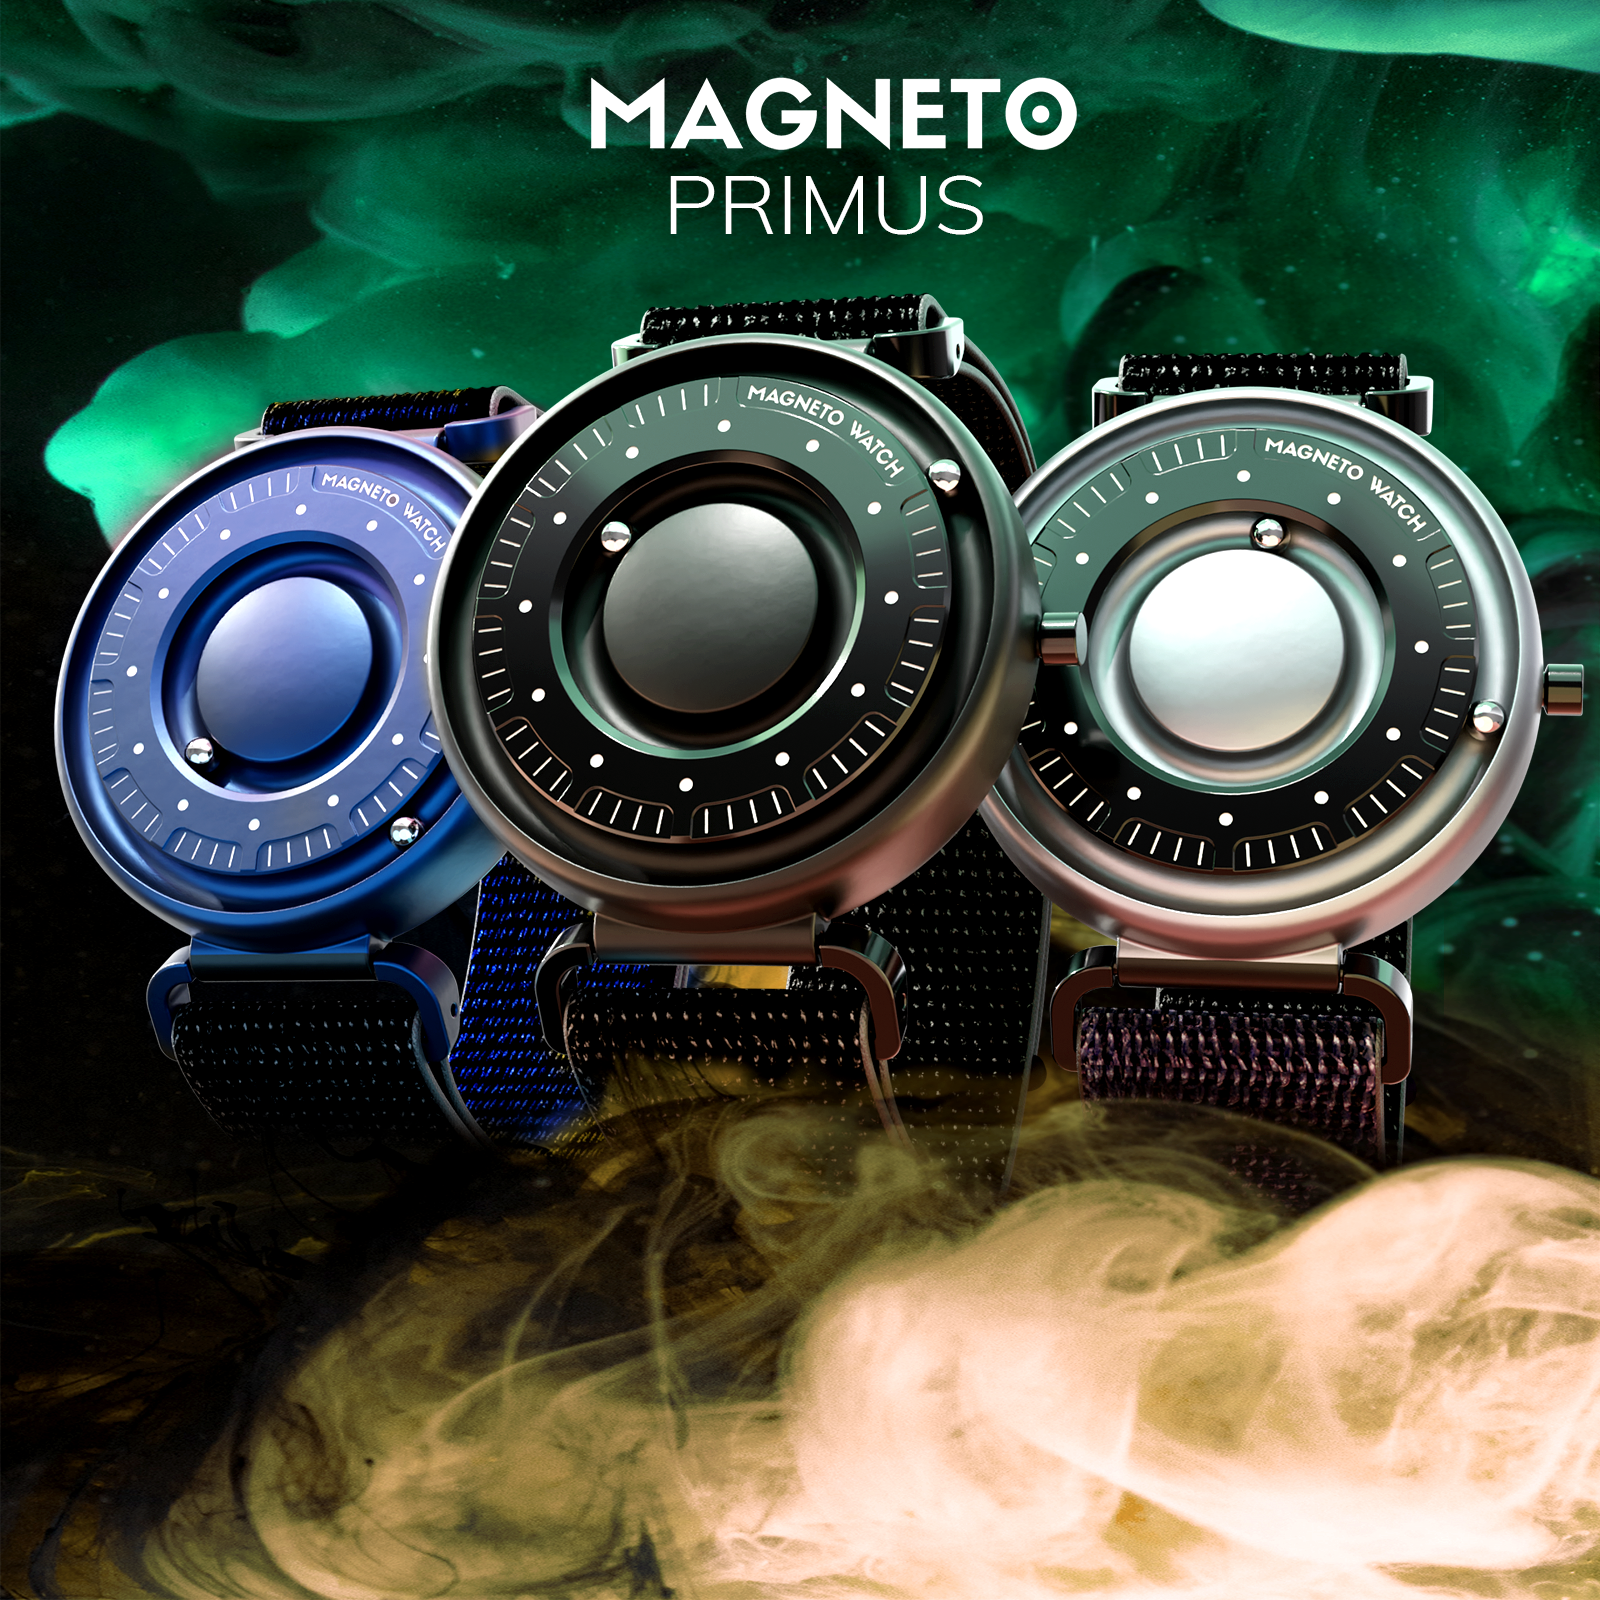 Reloj magnético magneto Komet, lo habíais visto??